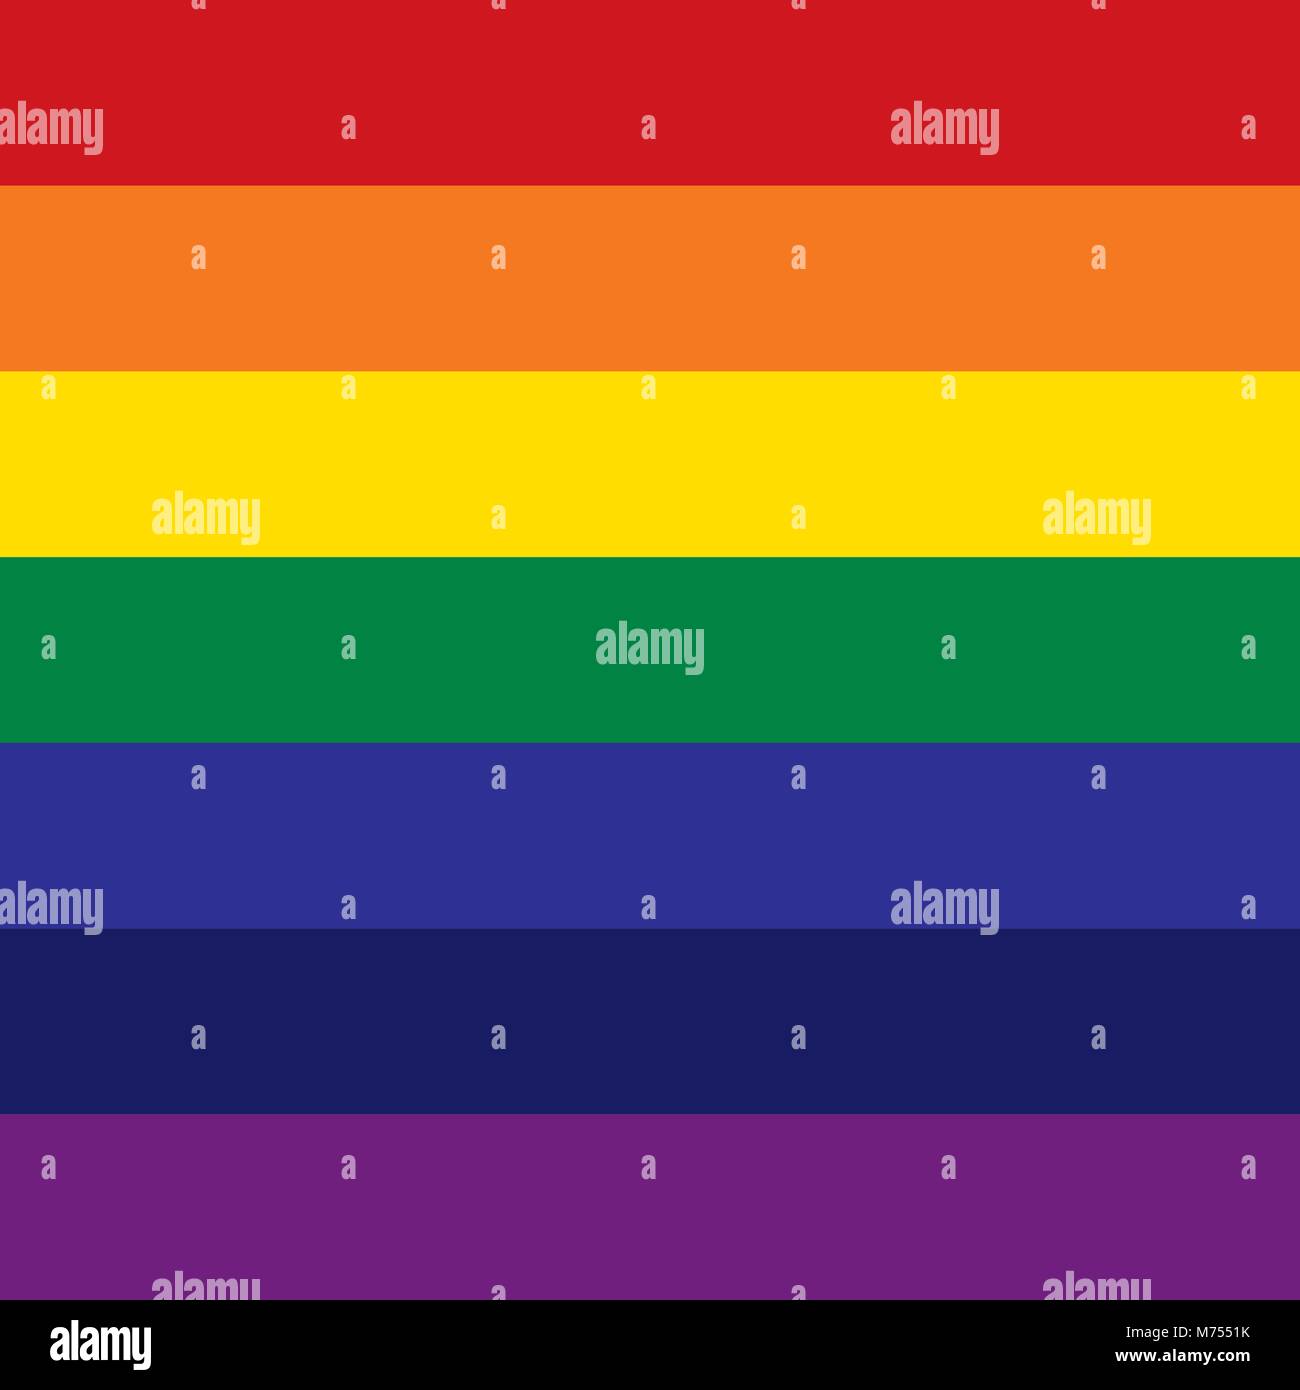 Couleurs arc-en-ciel : rouge, orange, jaune, vert, bleu, indigo, Violet Illustration de Vecteur